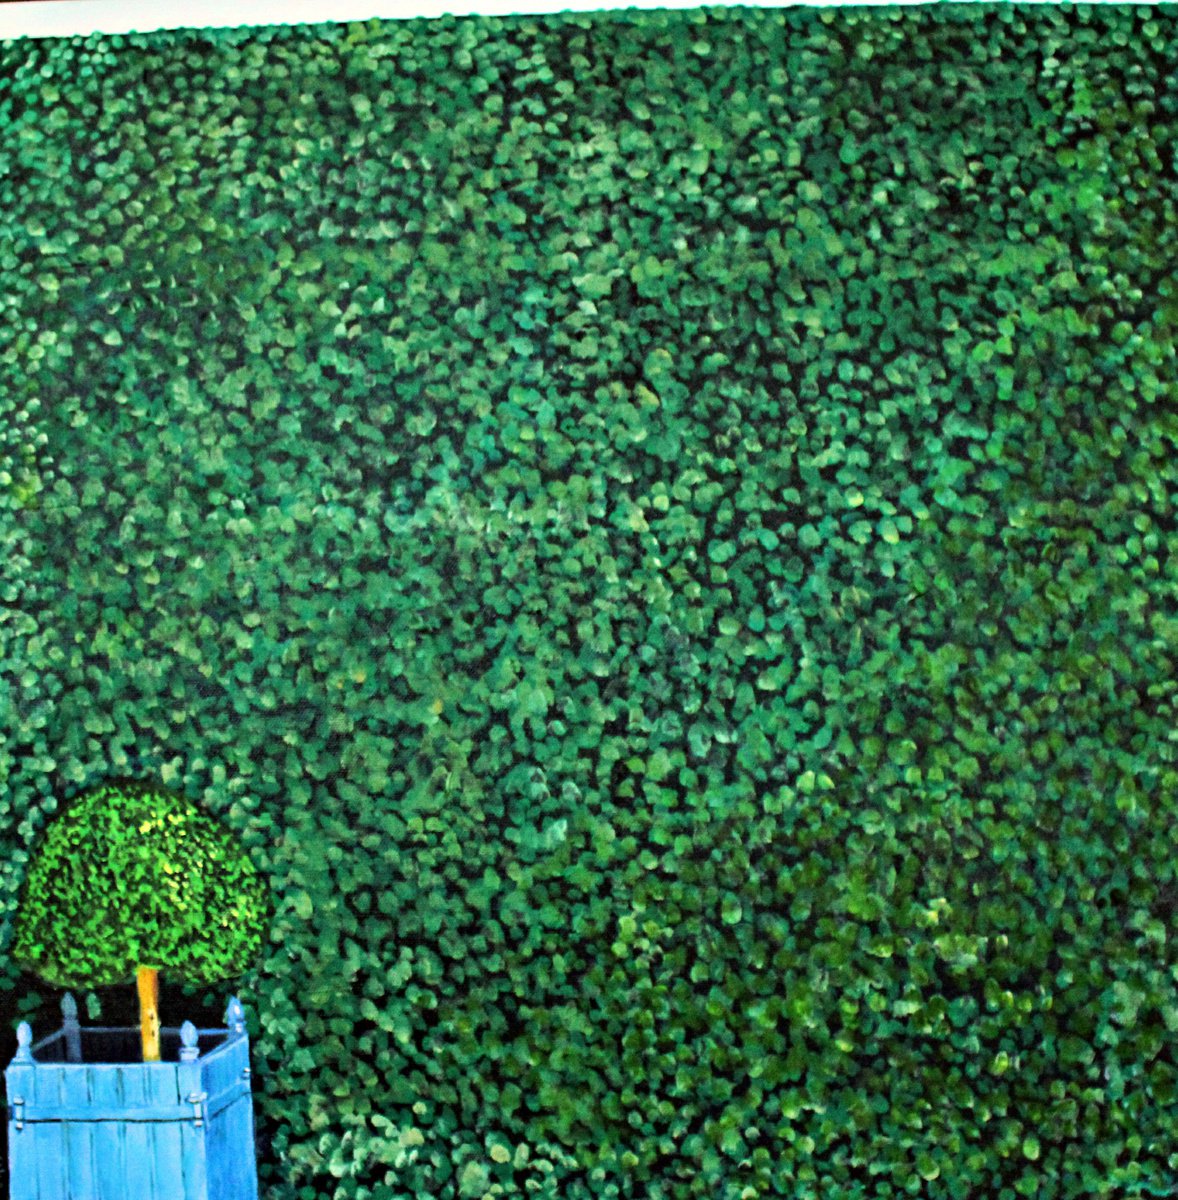 Hedges: The Lawn II by Ken Vrana